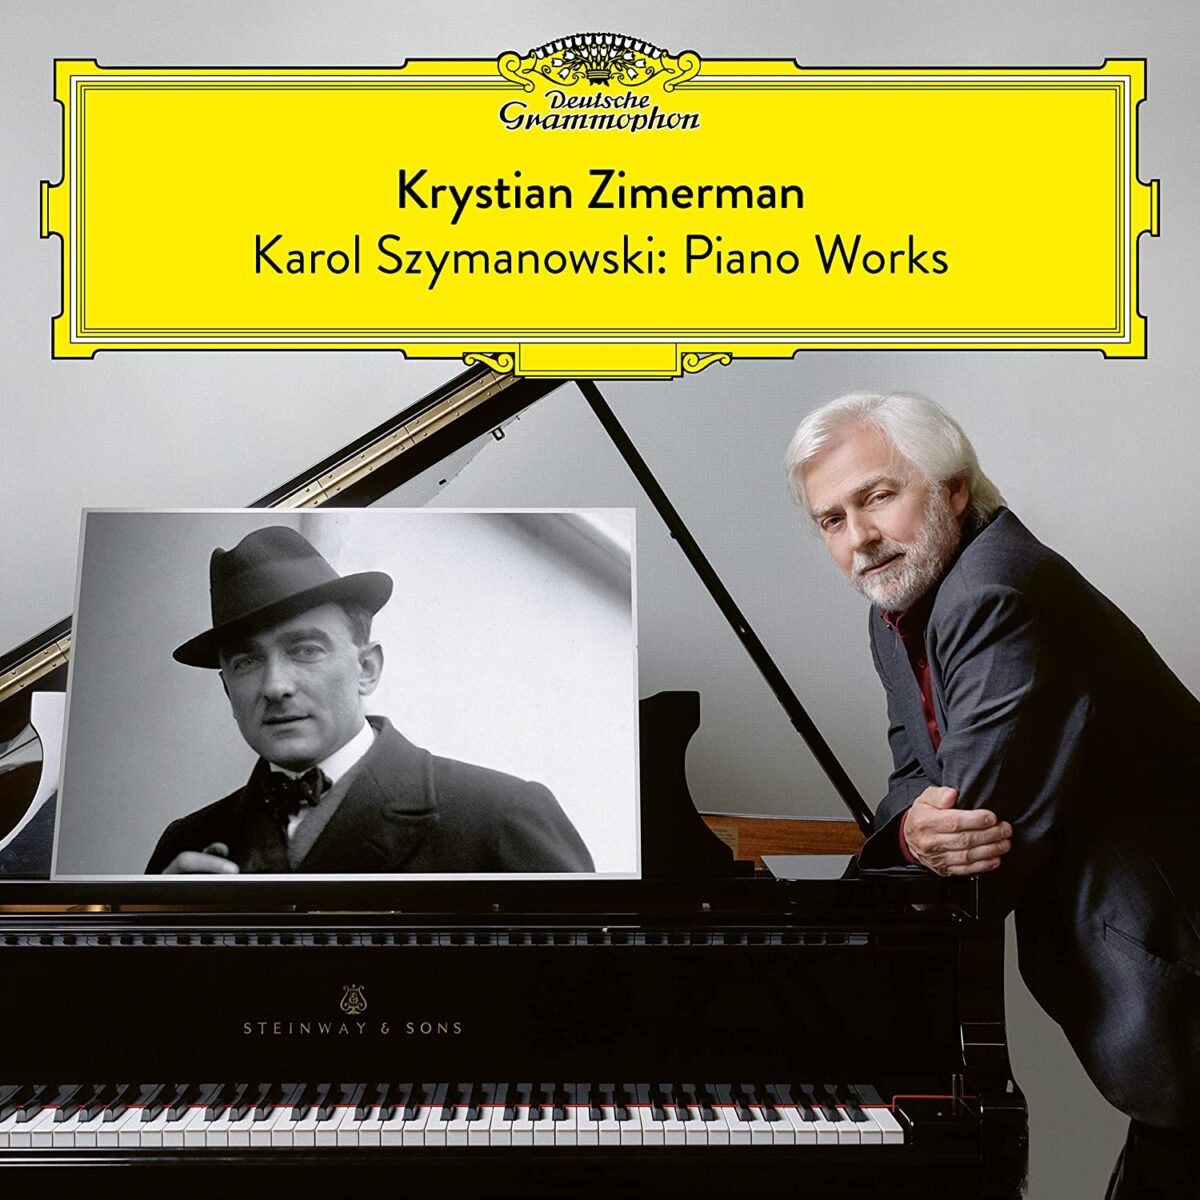 Karol Szymanowski: Piano Works | Krystian Zimerman carturesti.ro poza noua